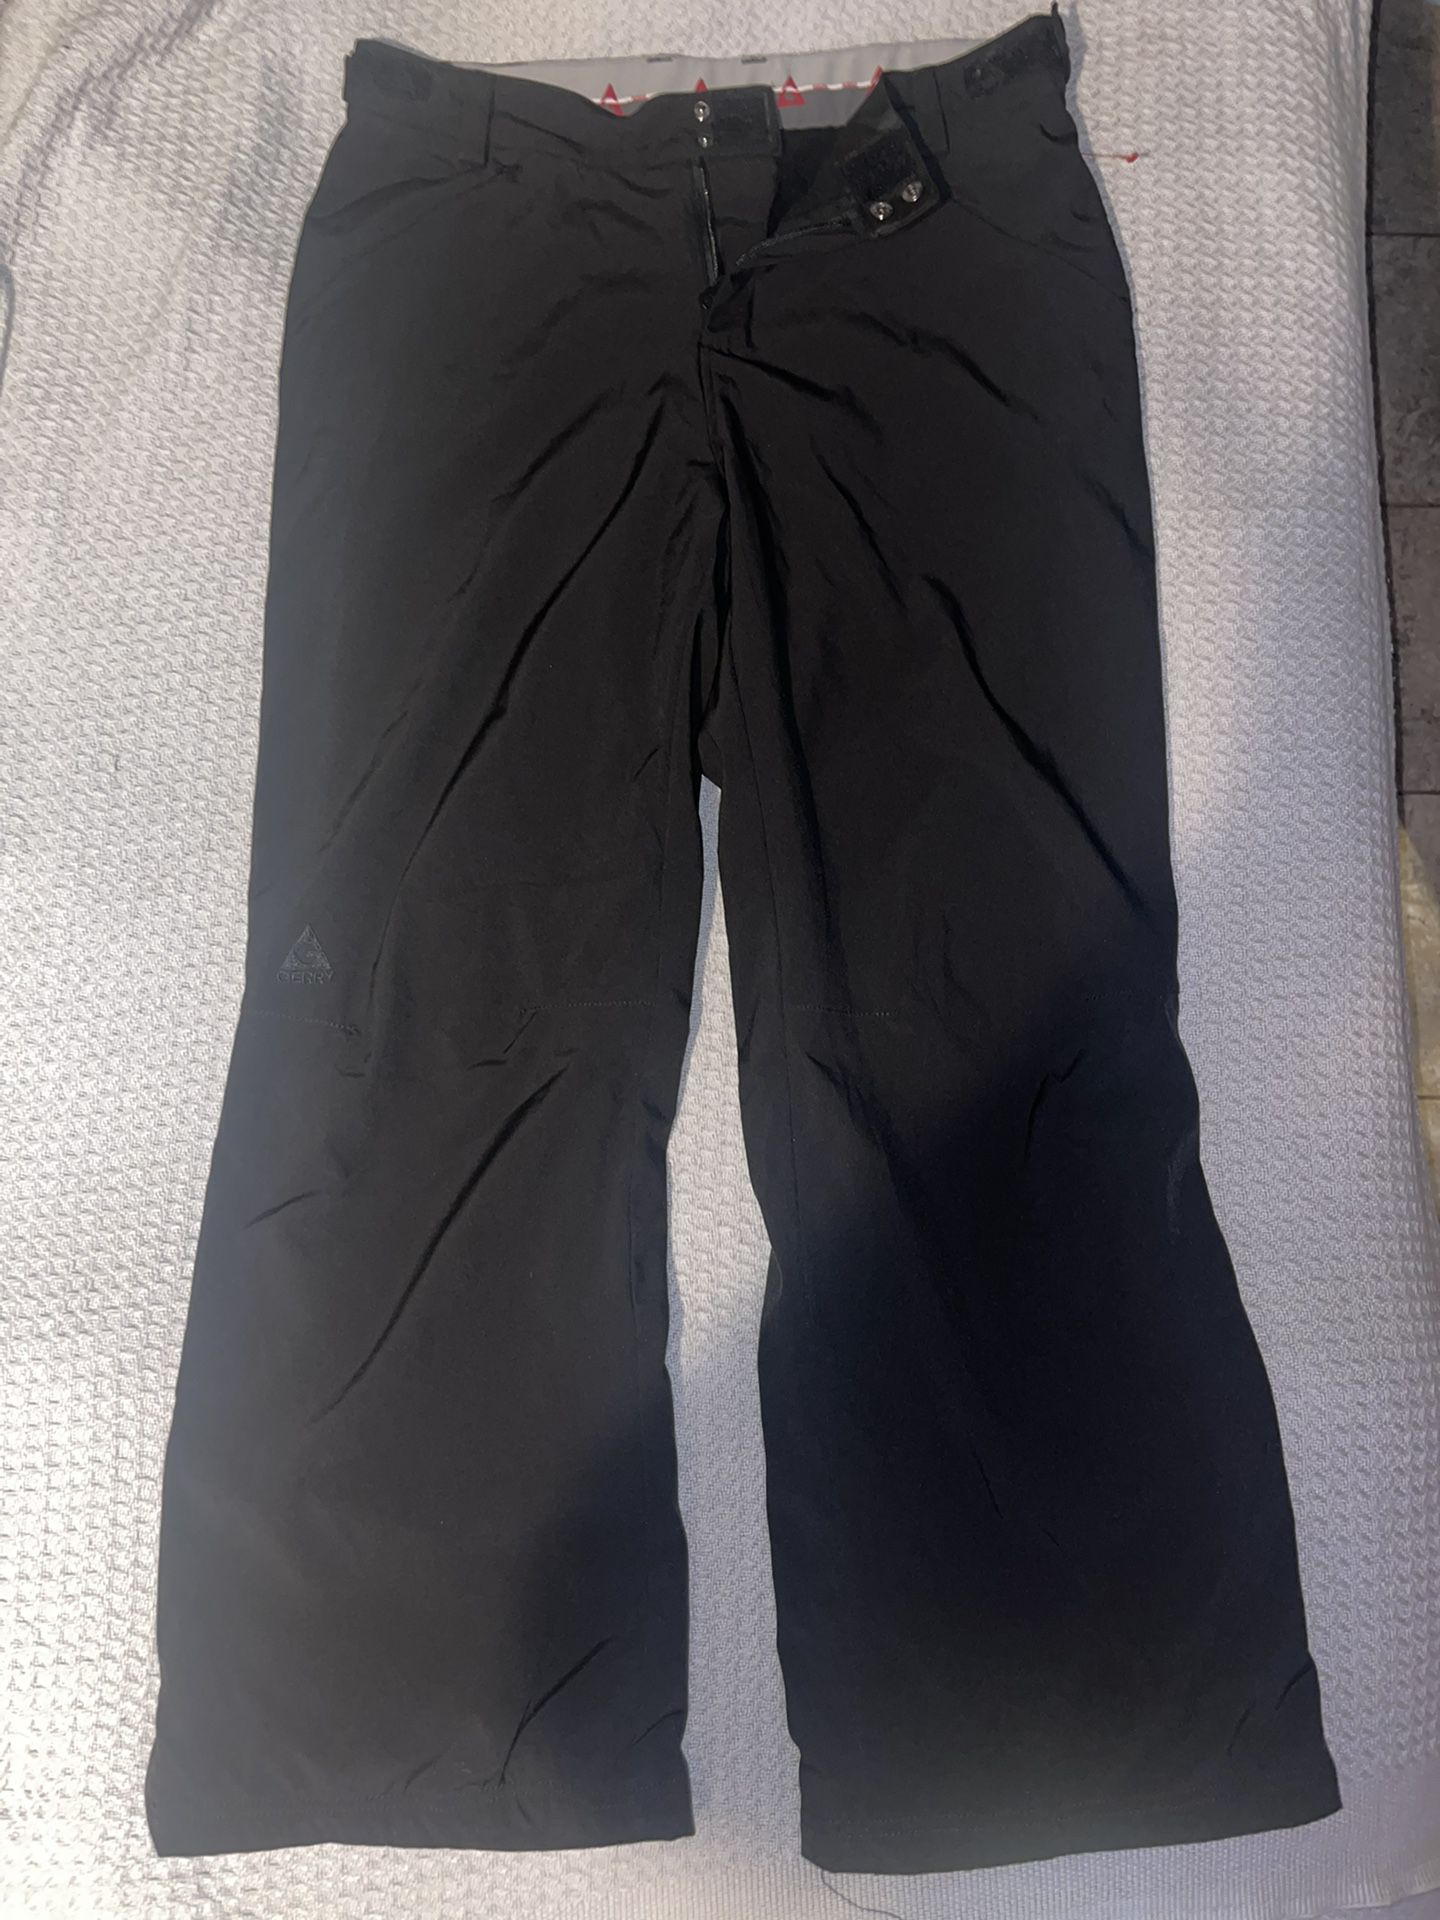 Gerry Women’s Ski Pants Insulated Water Resistant Fleece Lined Women’s Snow Pants